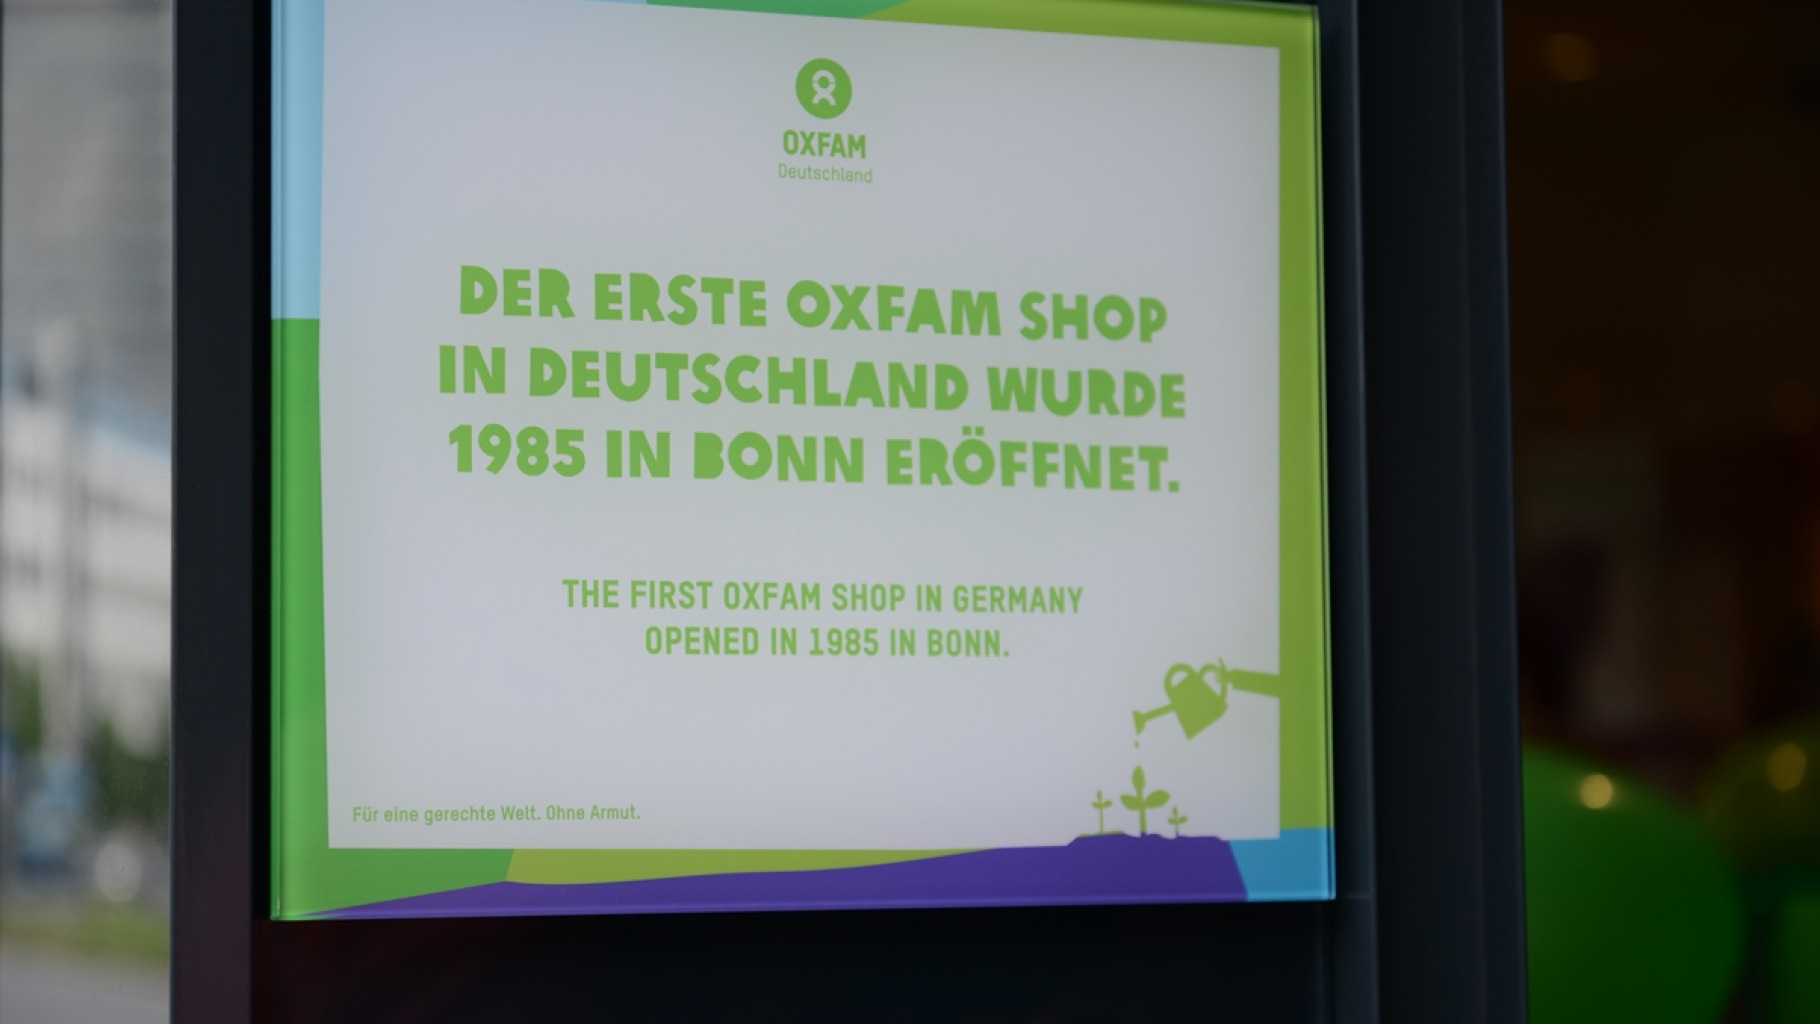 Oxfam Shop Bonn - erster Oxfam Shop in Deutschland